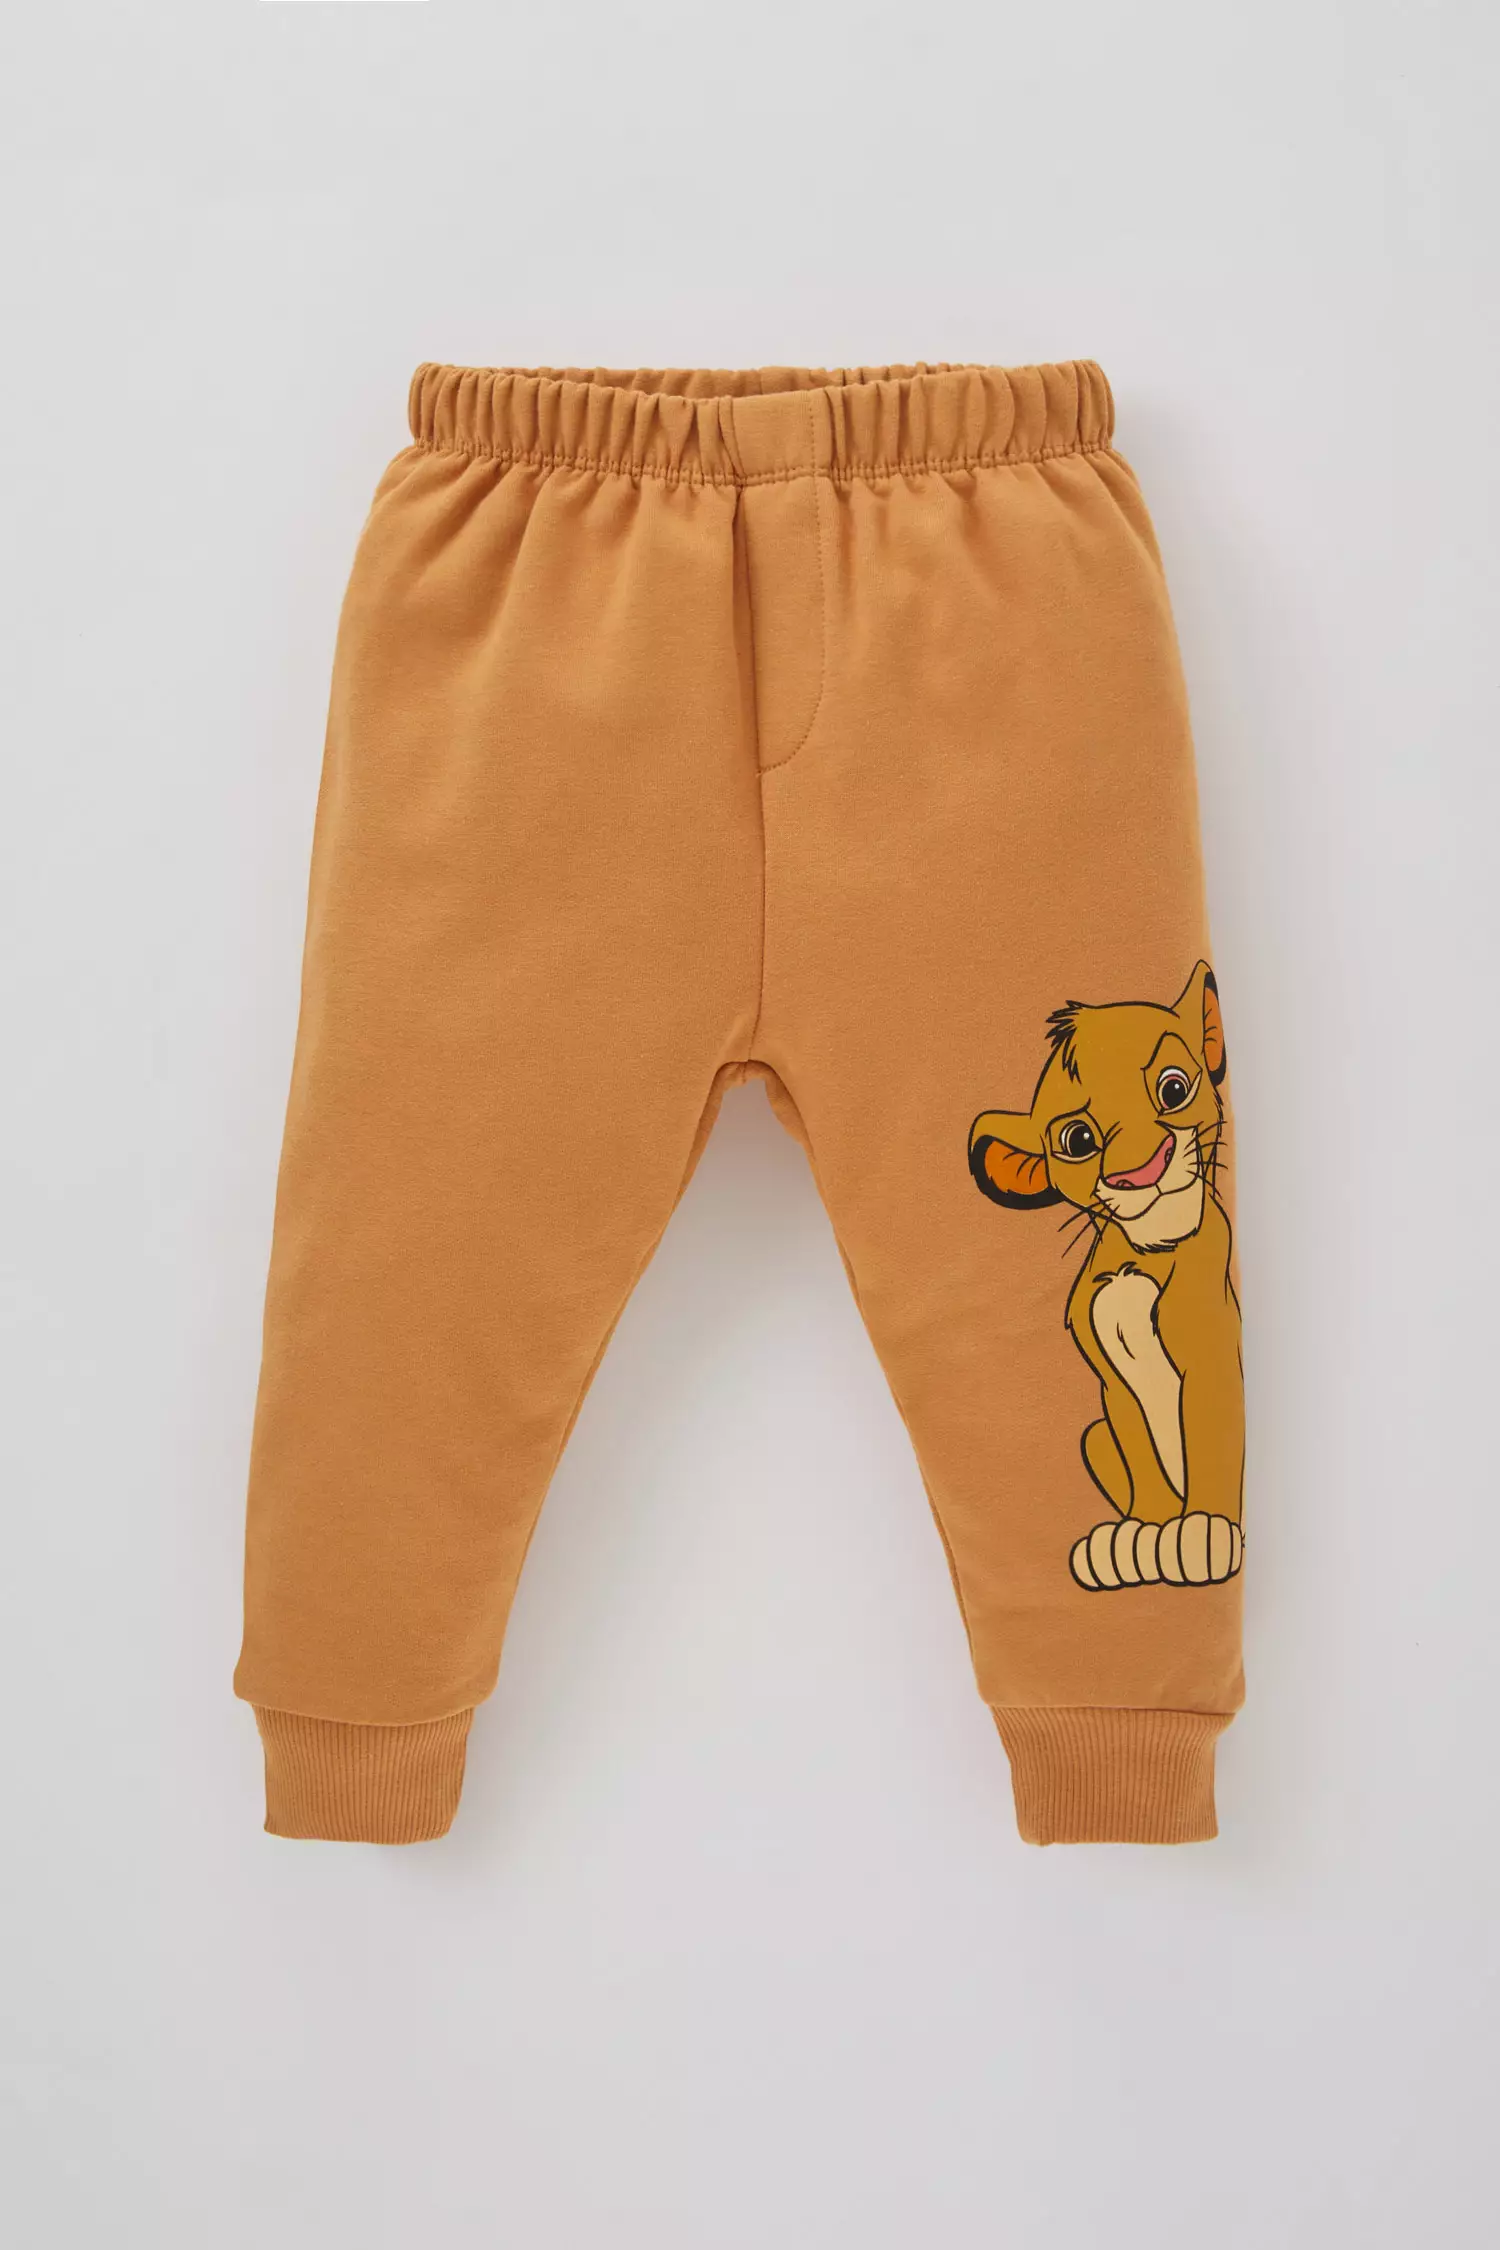 2 piece Regular Fit Crew Neck Lion King Licensed Knitted Set